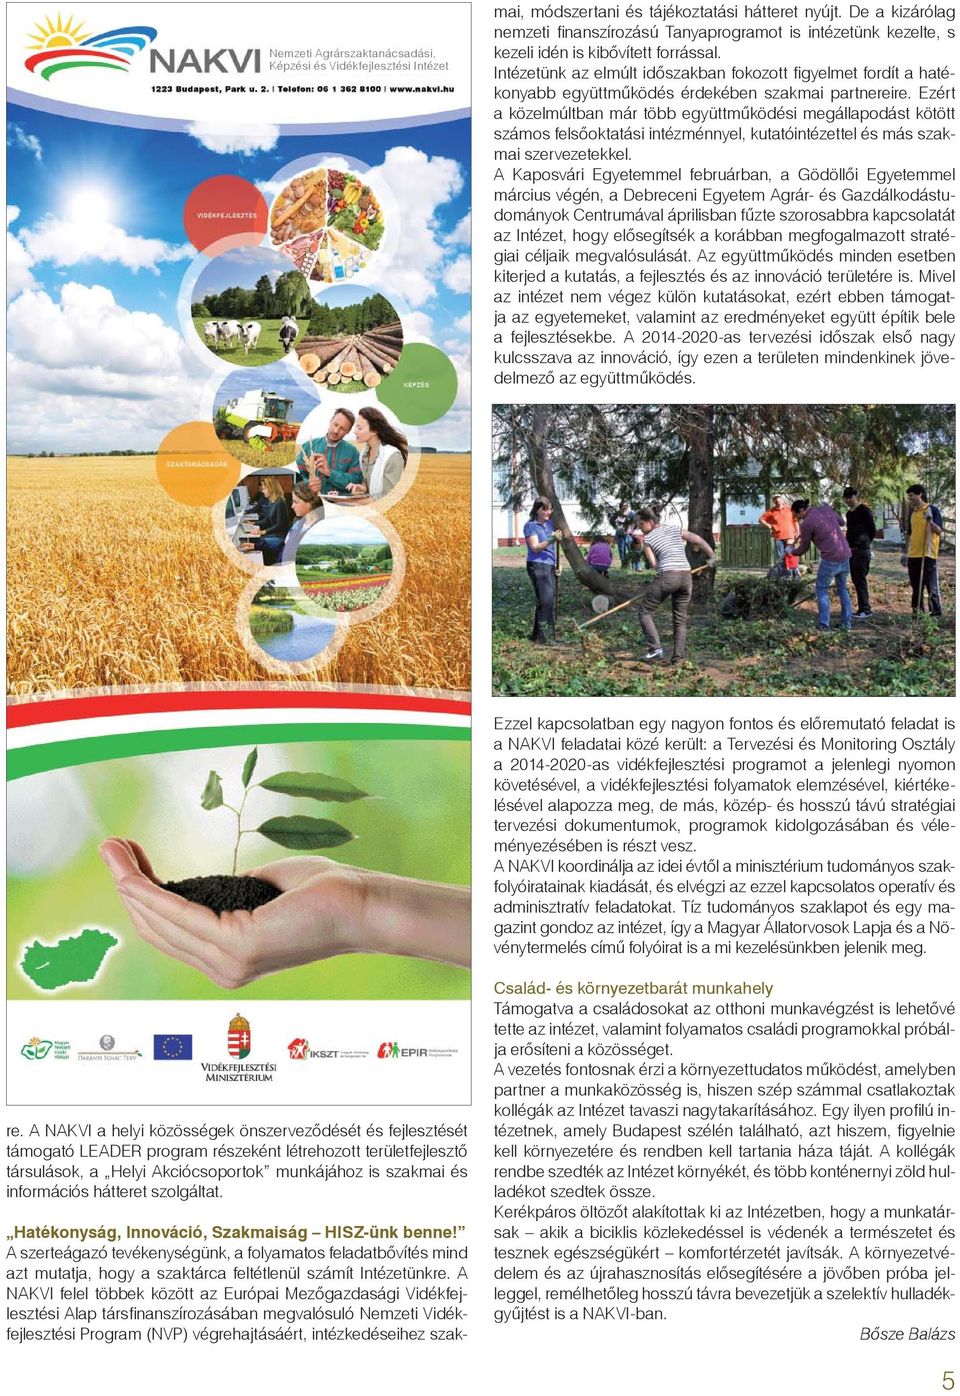 A NAKVI felel többek között az Európai Mezőgazdasági Vidékfejlesztési Alap társfi nanszírozásában megvalósuló Nemzeti Vidékfejlesztési Program (NVP) végrehajtásáért, intézkedéseihez szakmai,